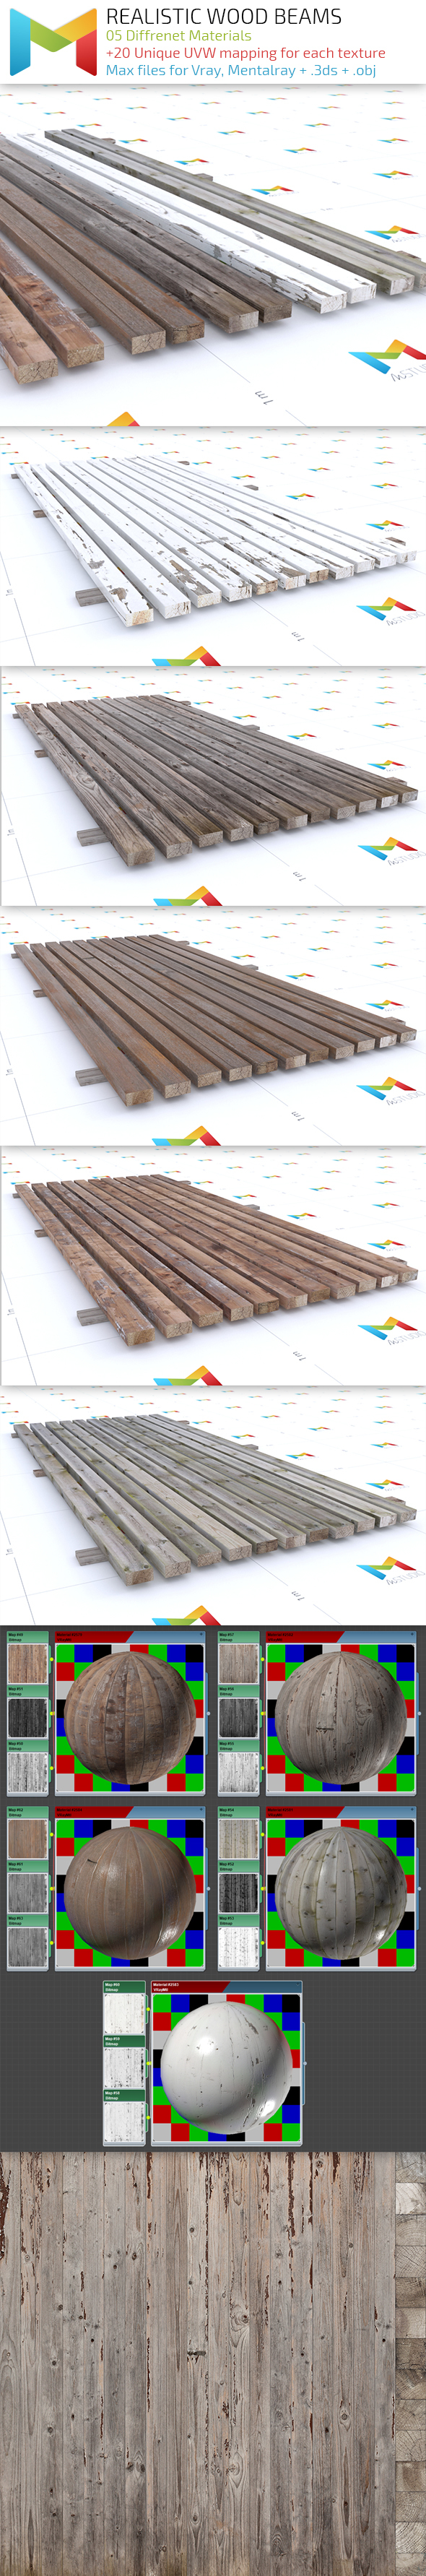 Realistic Wood Beams - 3Docean 13783955